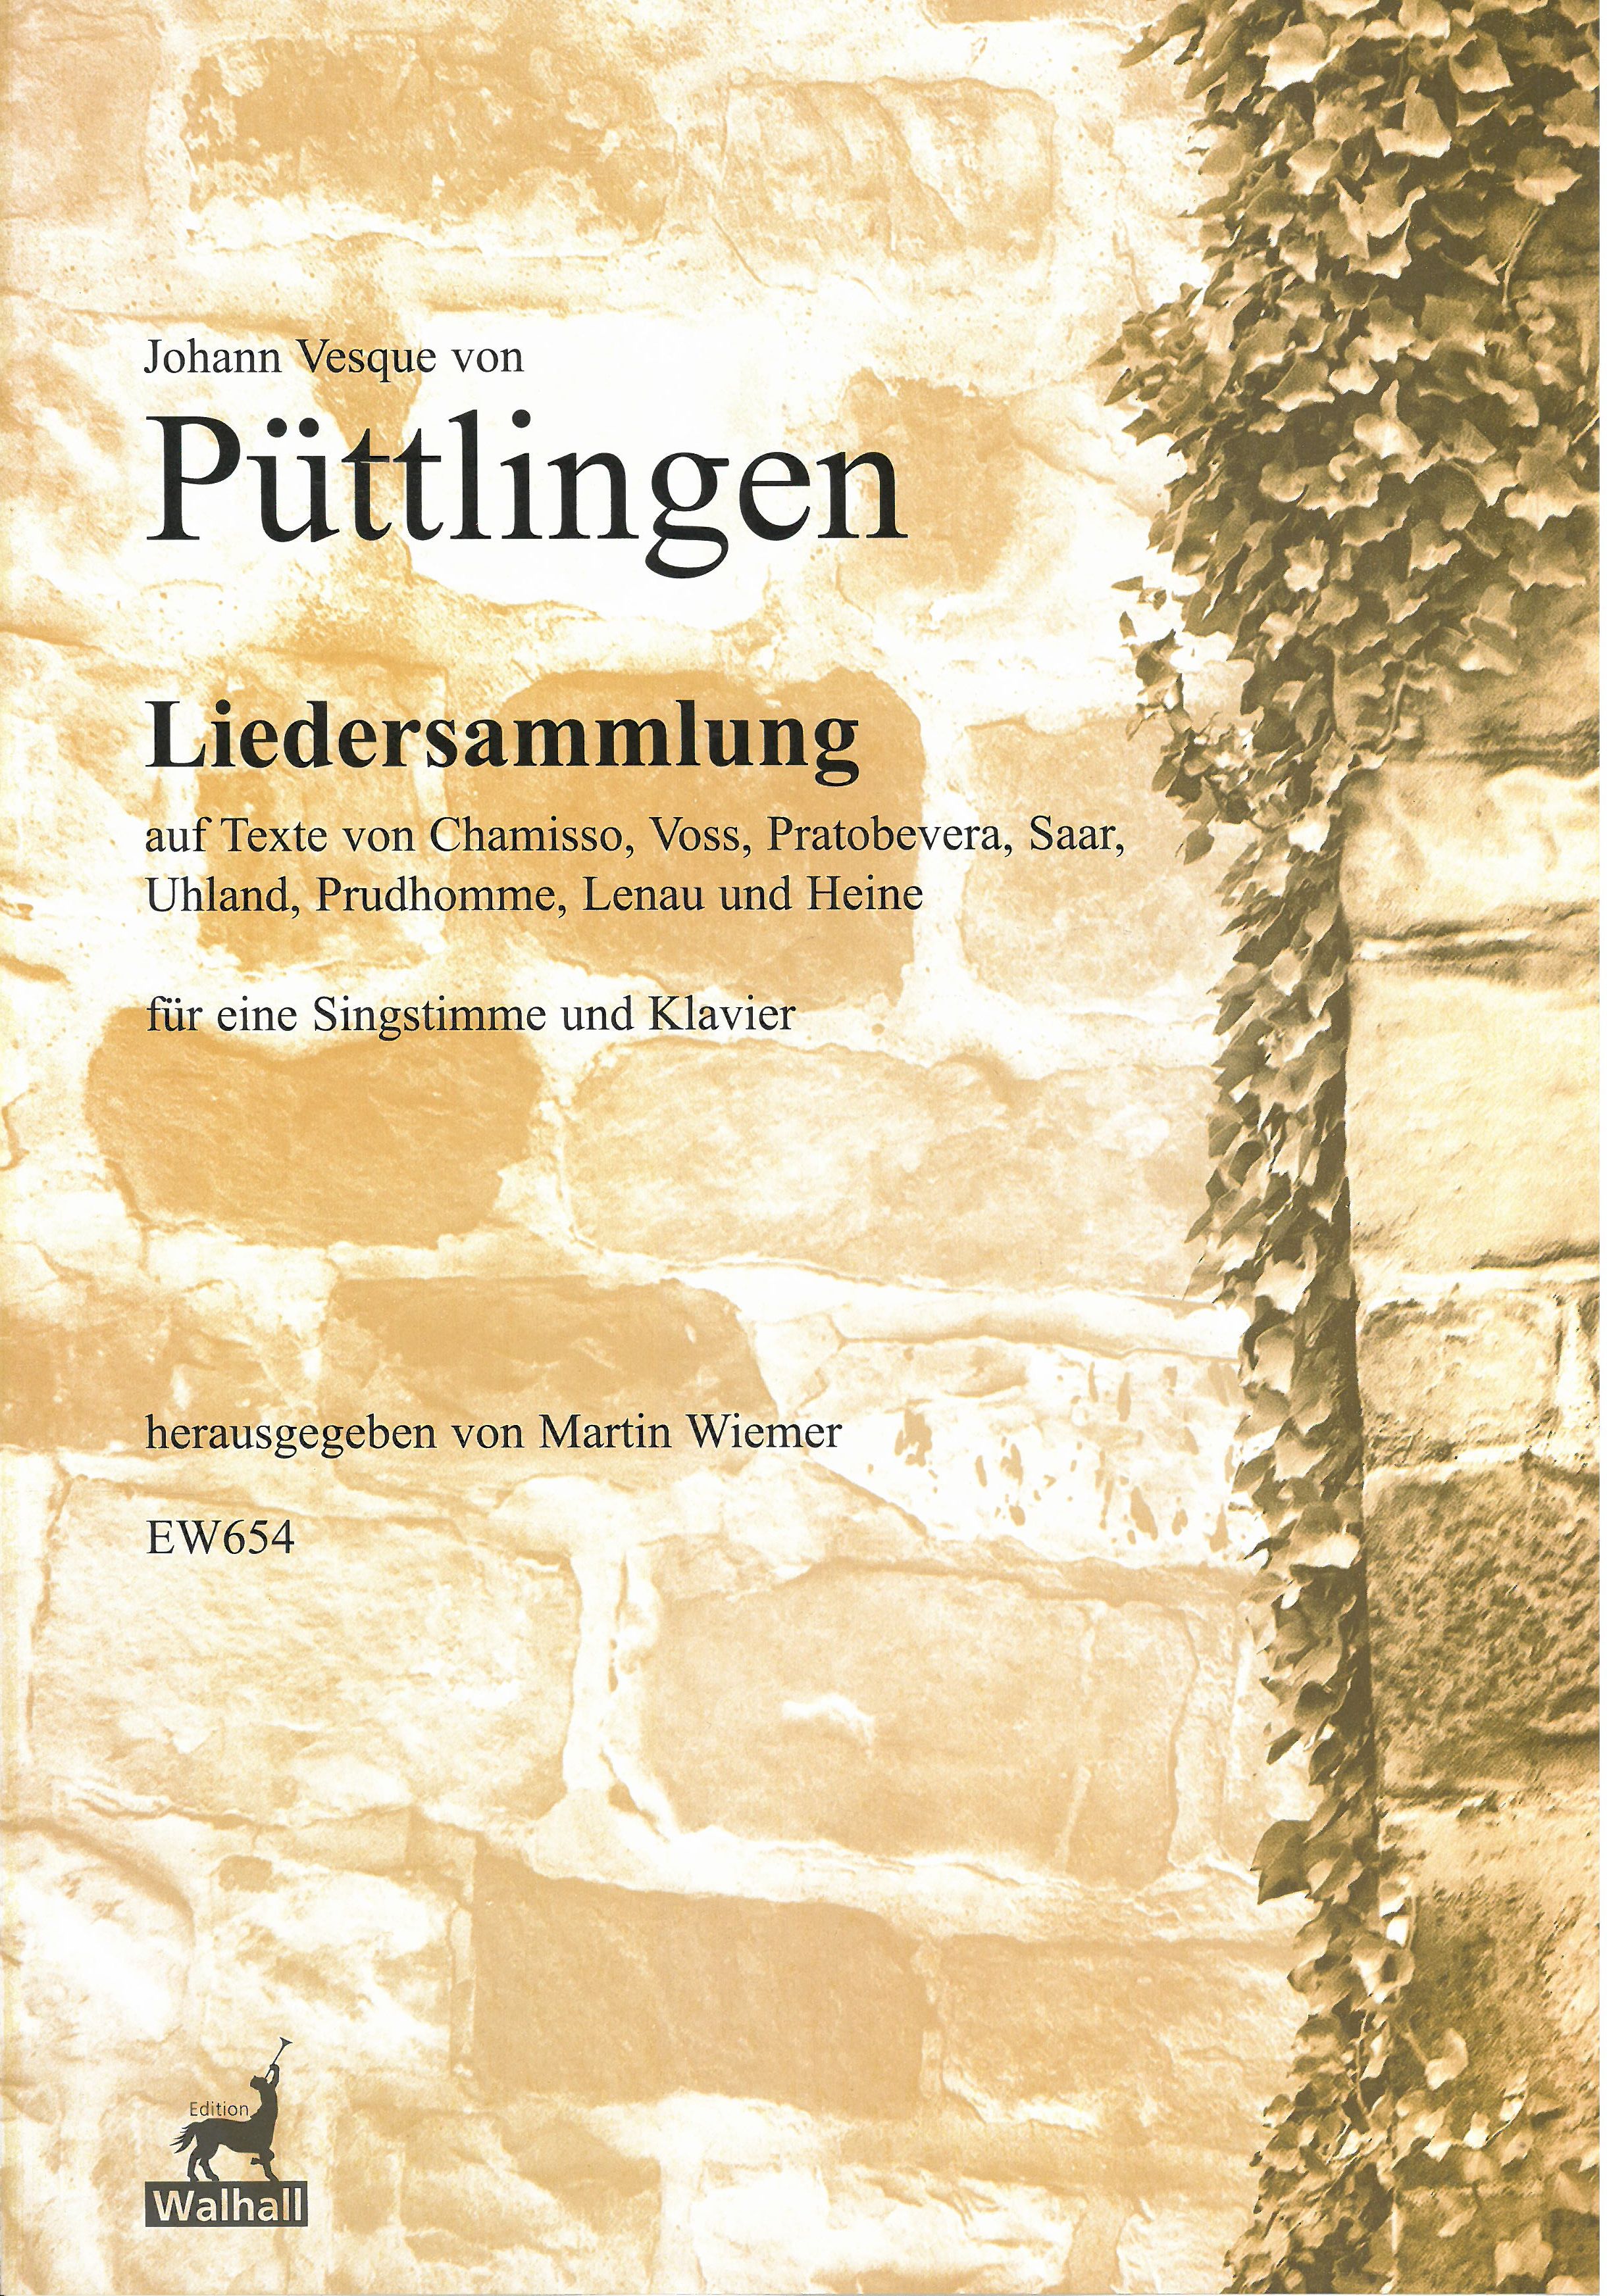 Liedersammlung : Für Eine Singstimme und Klavier / edited by Martin Wiemer.